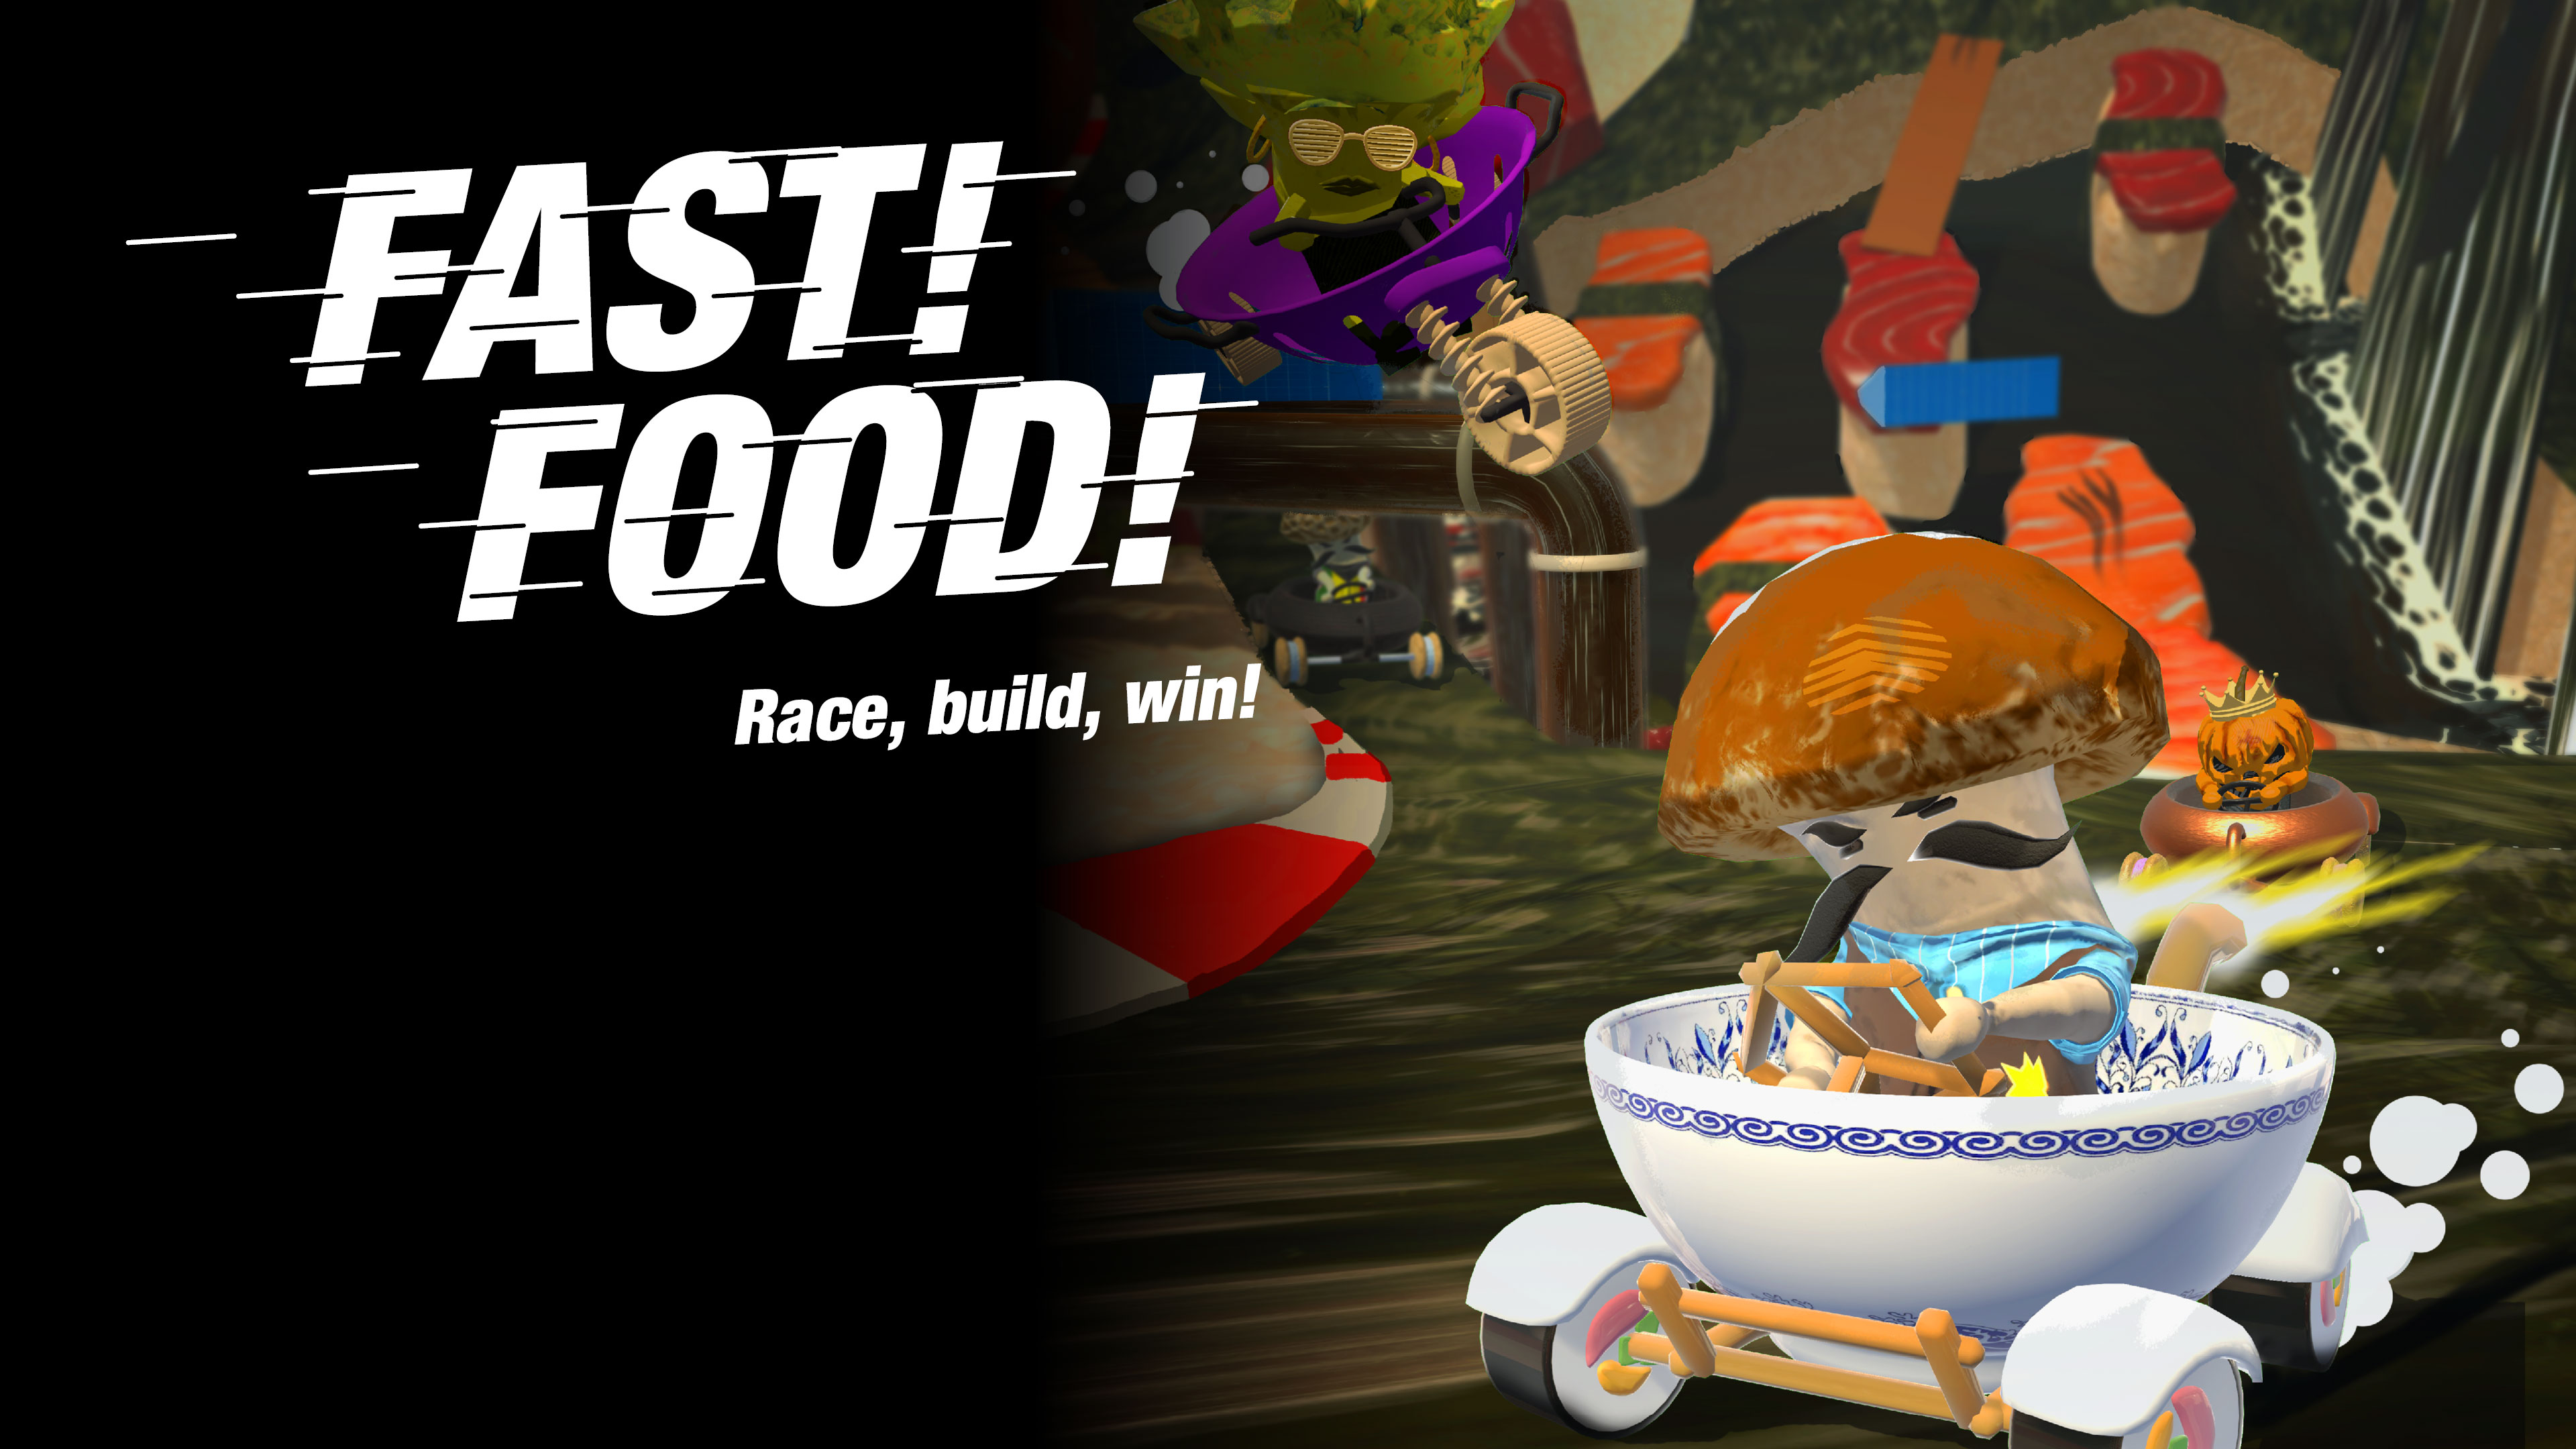 Fast! Food!